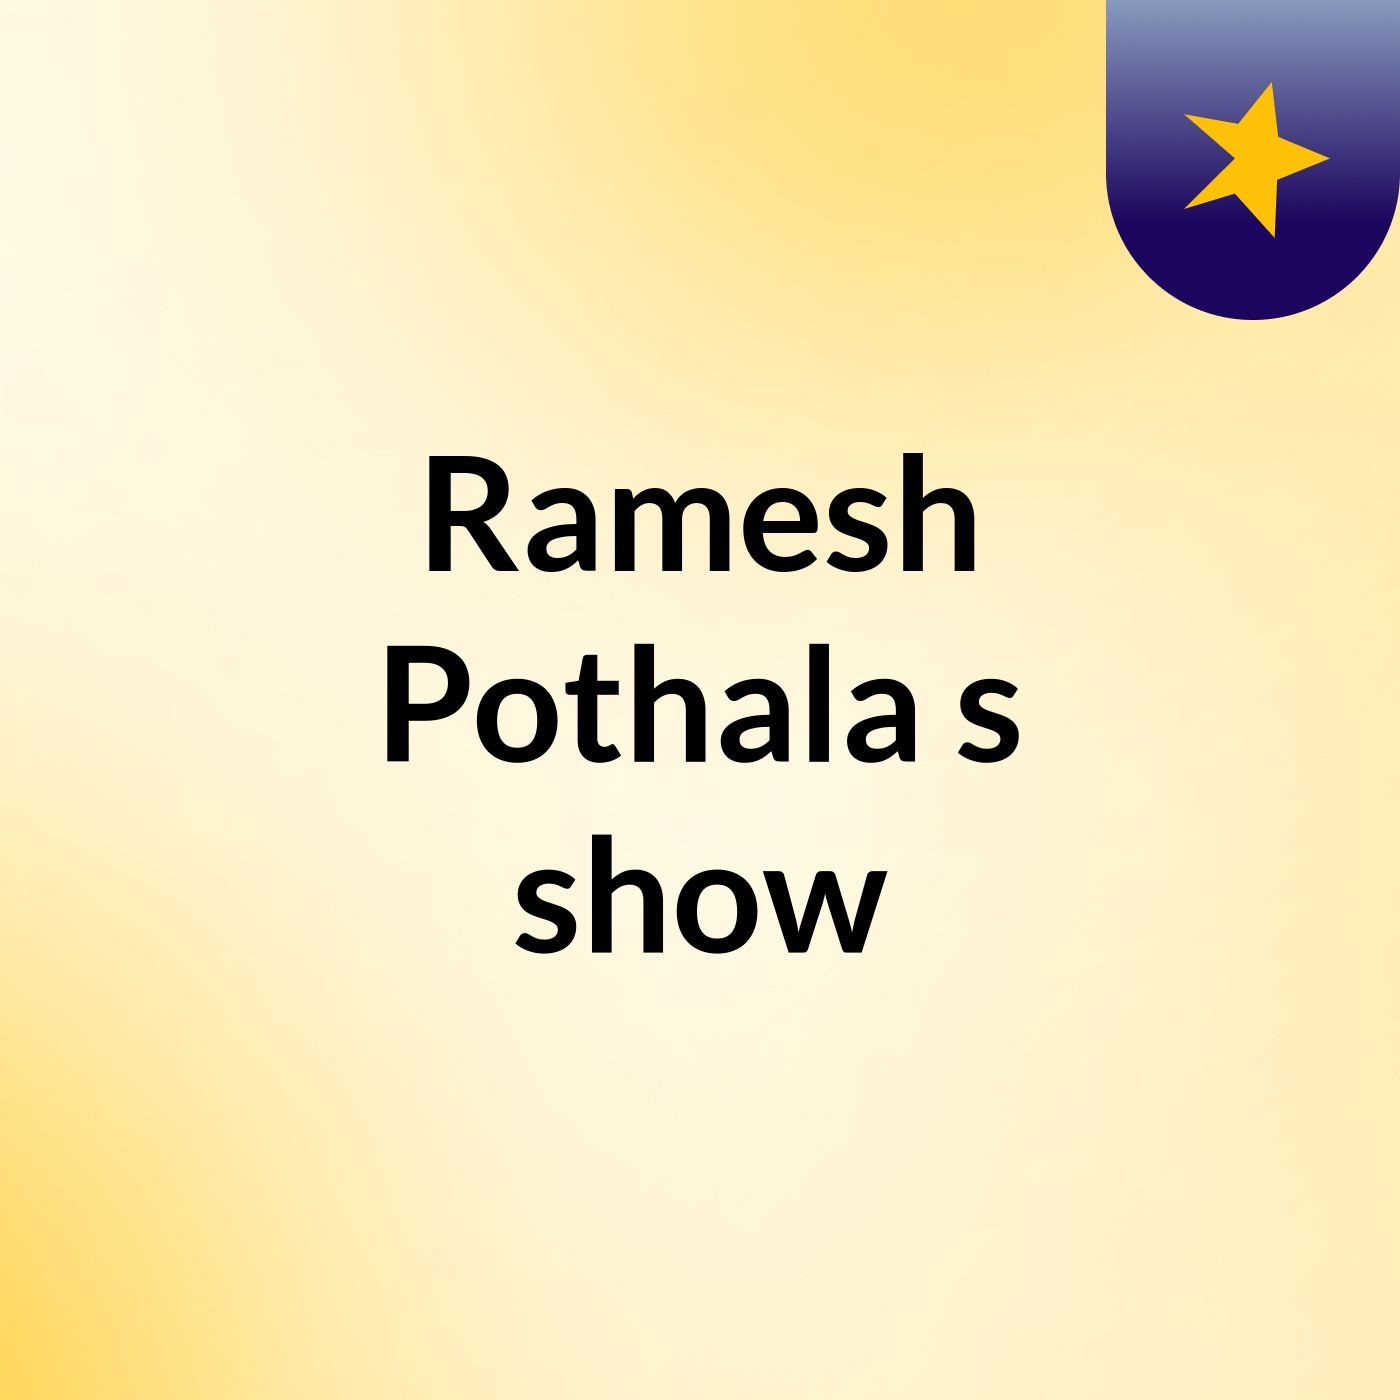 Ramesh Pothala's show